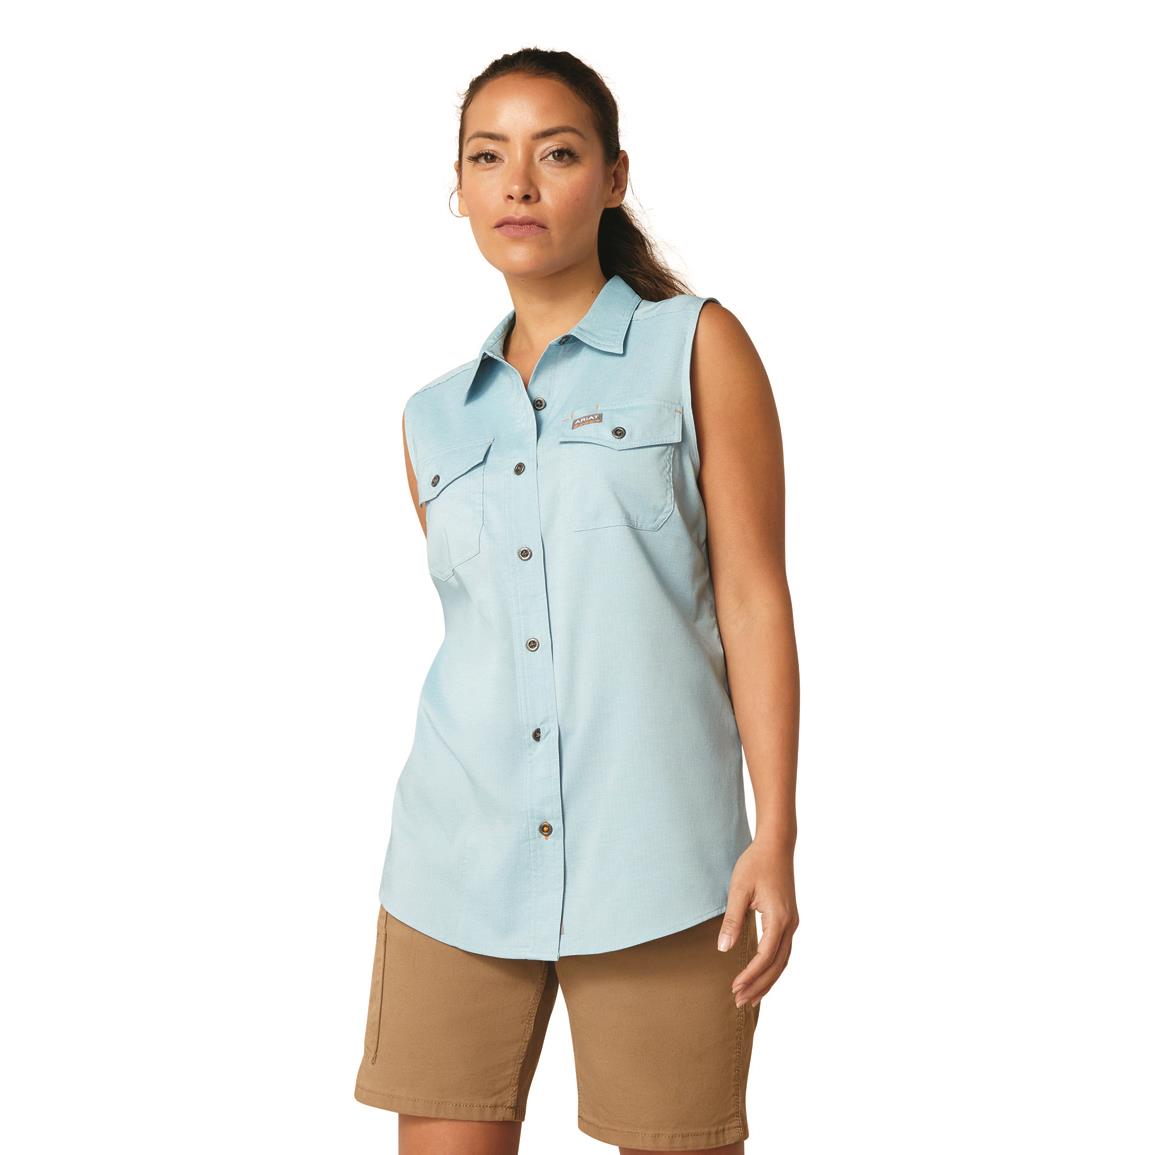 Ariat Women's Rebar Made Tough VentTEK DuraStretch Sleeveless Work Shirt, Bluejay Heather